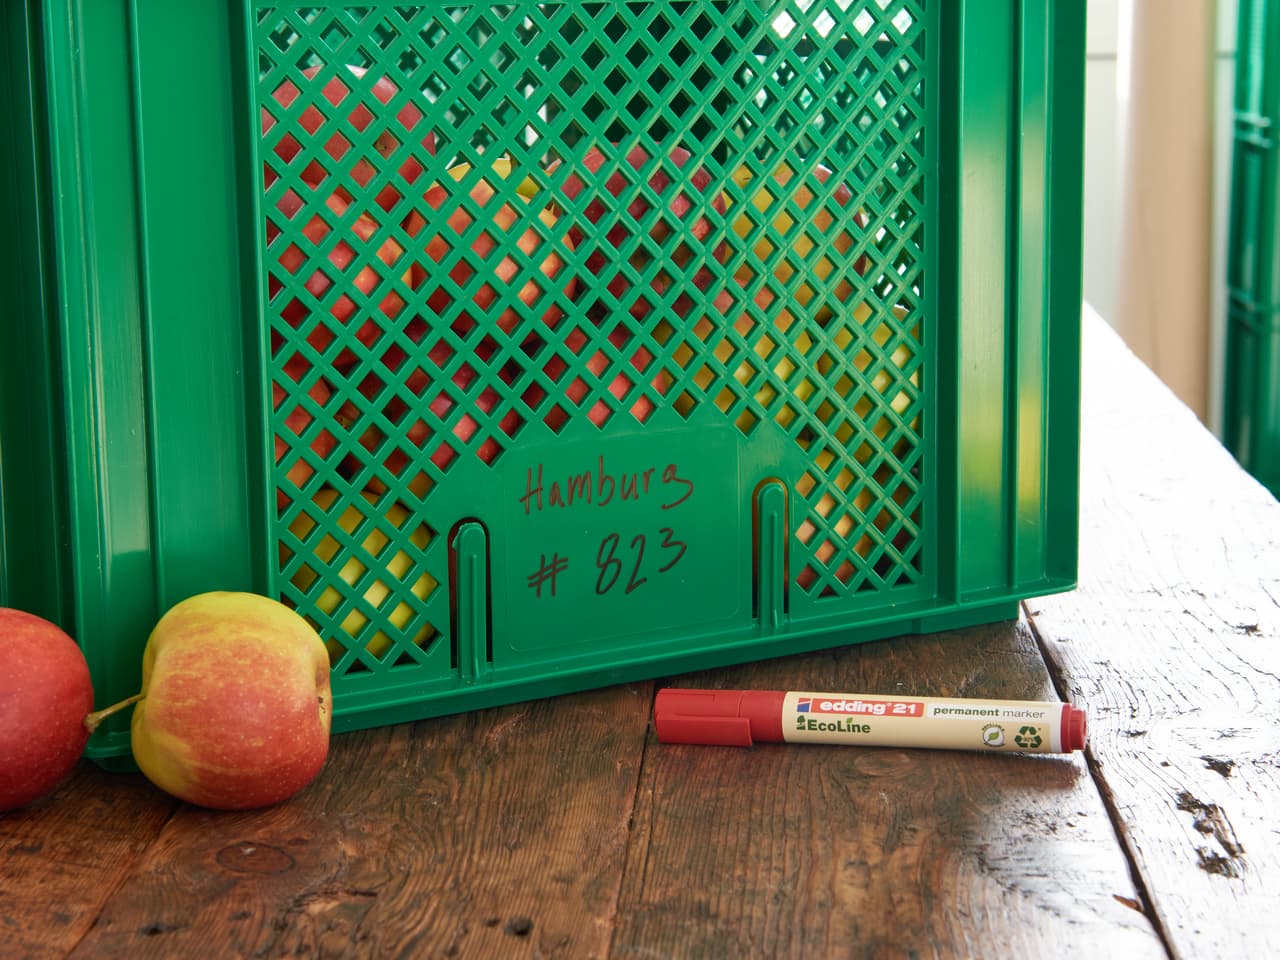 Grüne Faltkiste mit der Aufschrift „Hamburg“ und der Nummer „#623“, platziert auf einer Holzfläche neben zwei Äpfeln und einem roten edding 21 EcoLine Permanentmarker von edding.